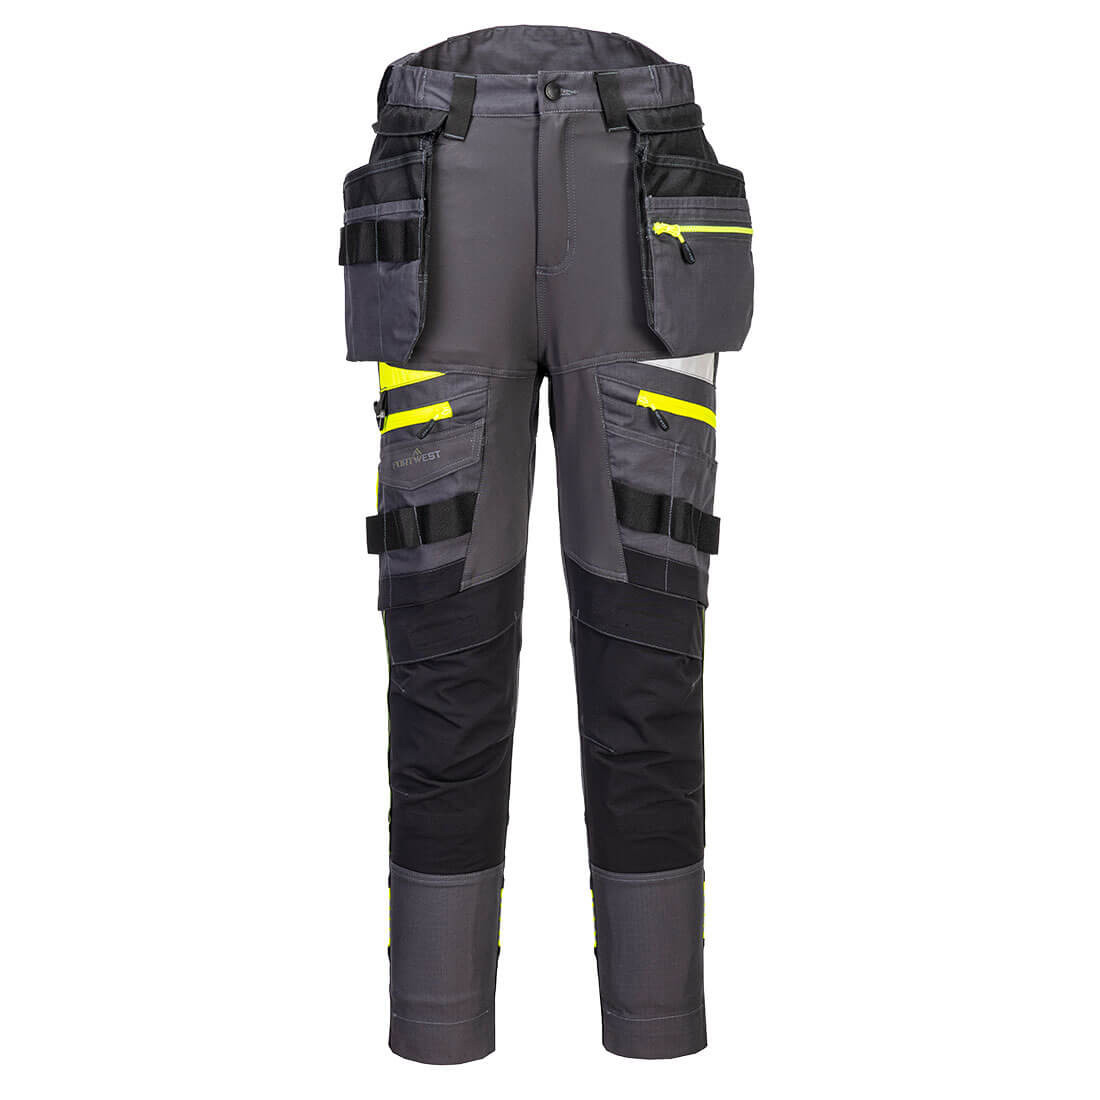 Pantalón DX4 Holster de alta visibilidad para mujer con bolsillos de pistolera desmontables - Ropa de protección